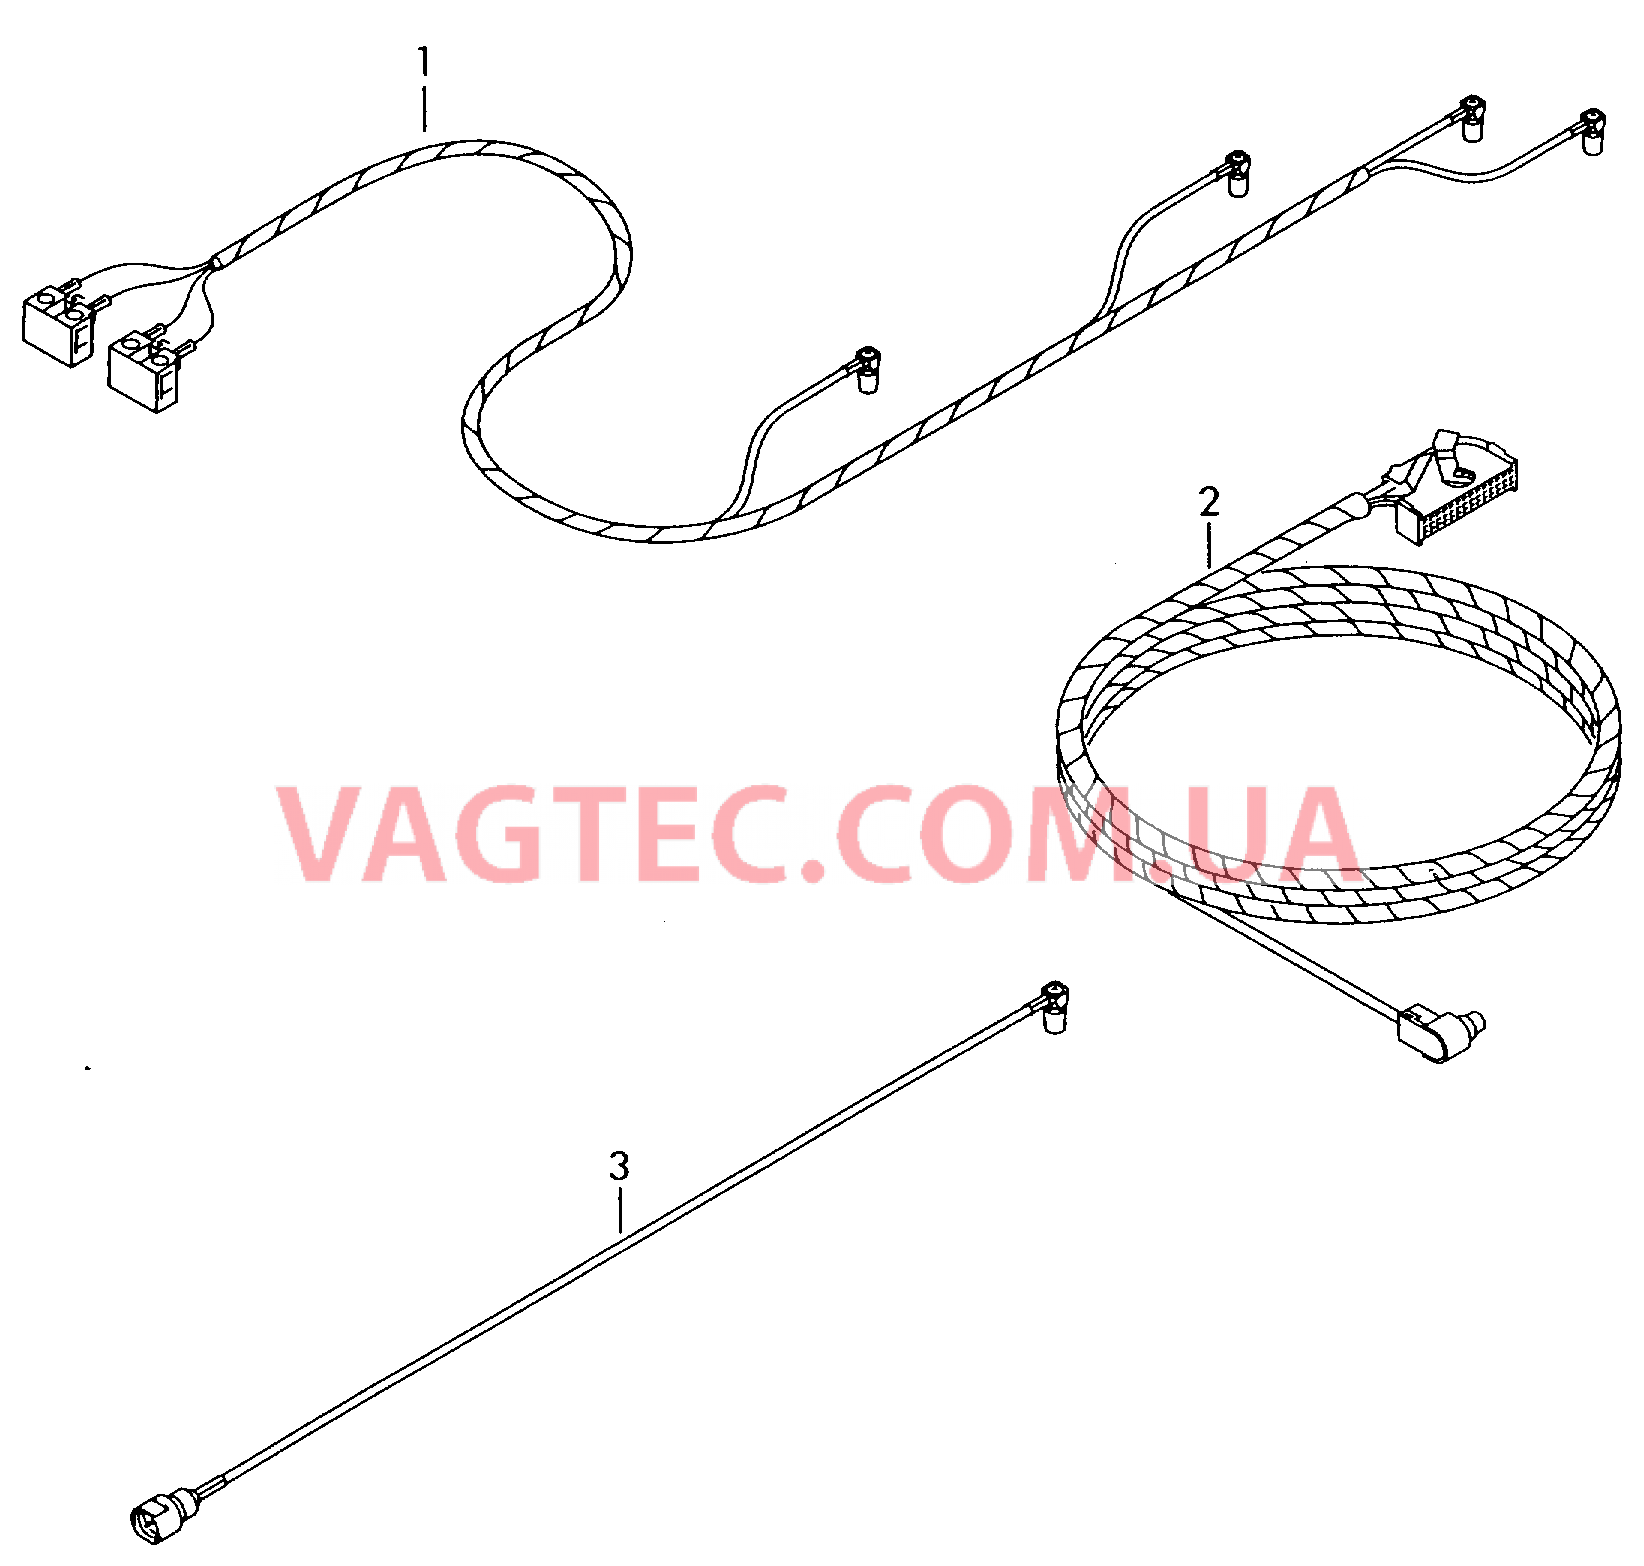 Жгут проводов системы навигации  Антенный кабель        также см. иллюстрацию:  для VOLKSWAGEN Passat 2004